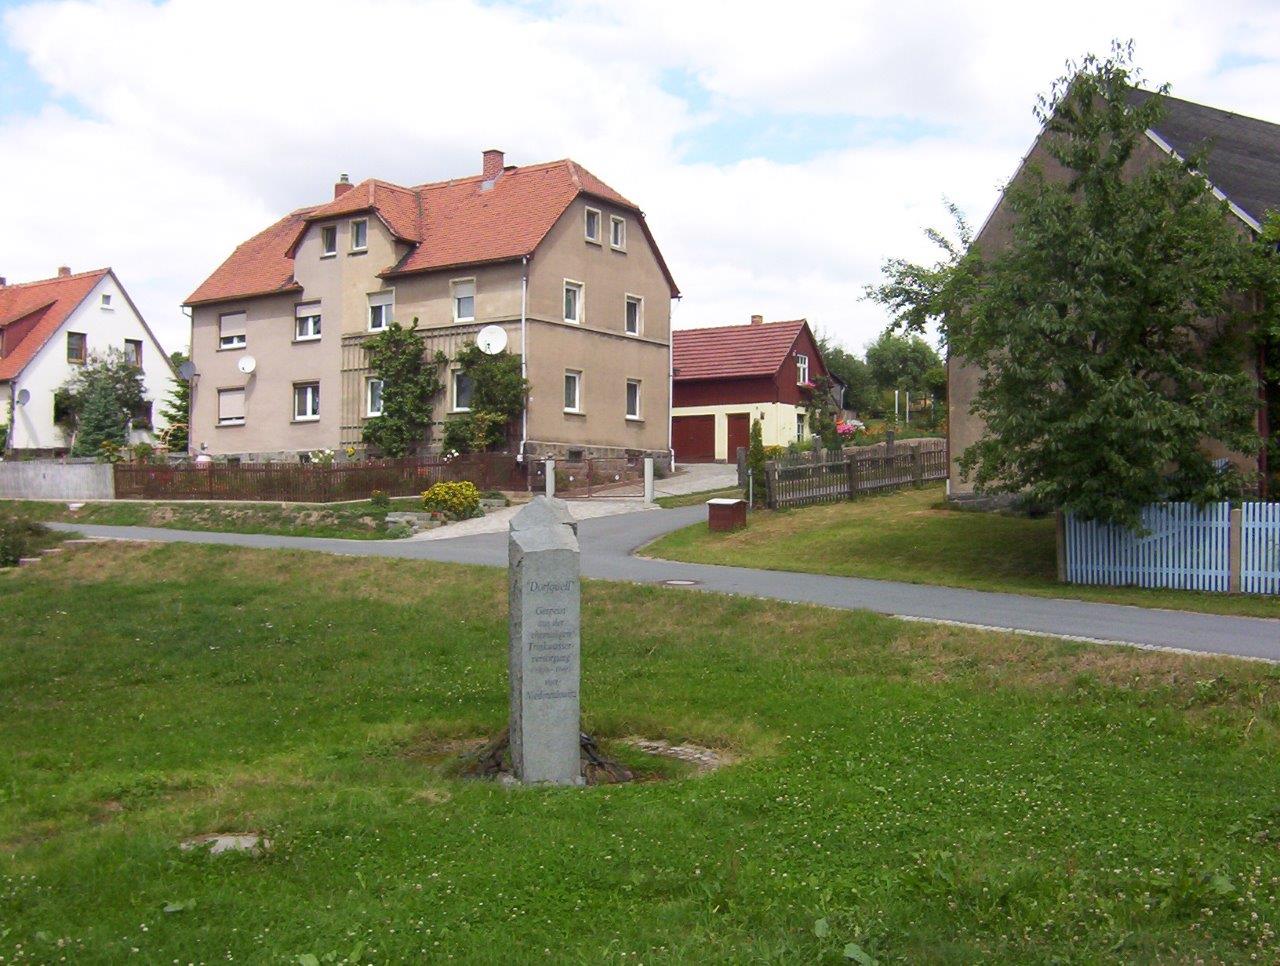 Eulowitz - Sprudelstein am Dorfteich